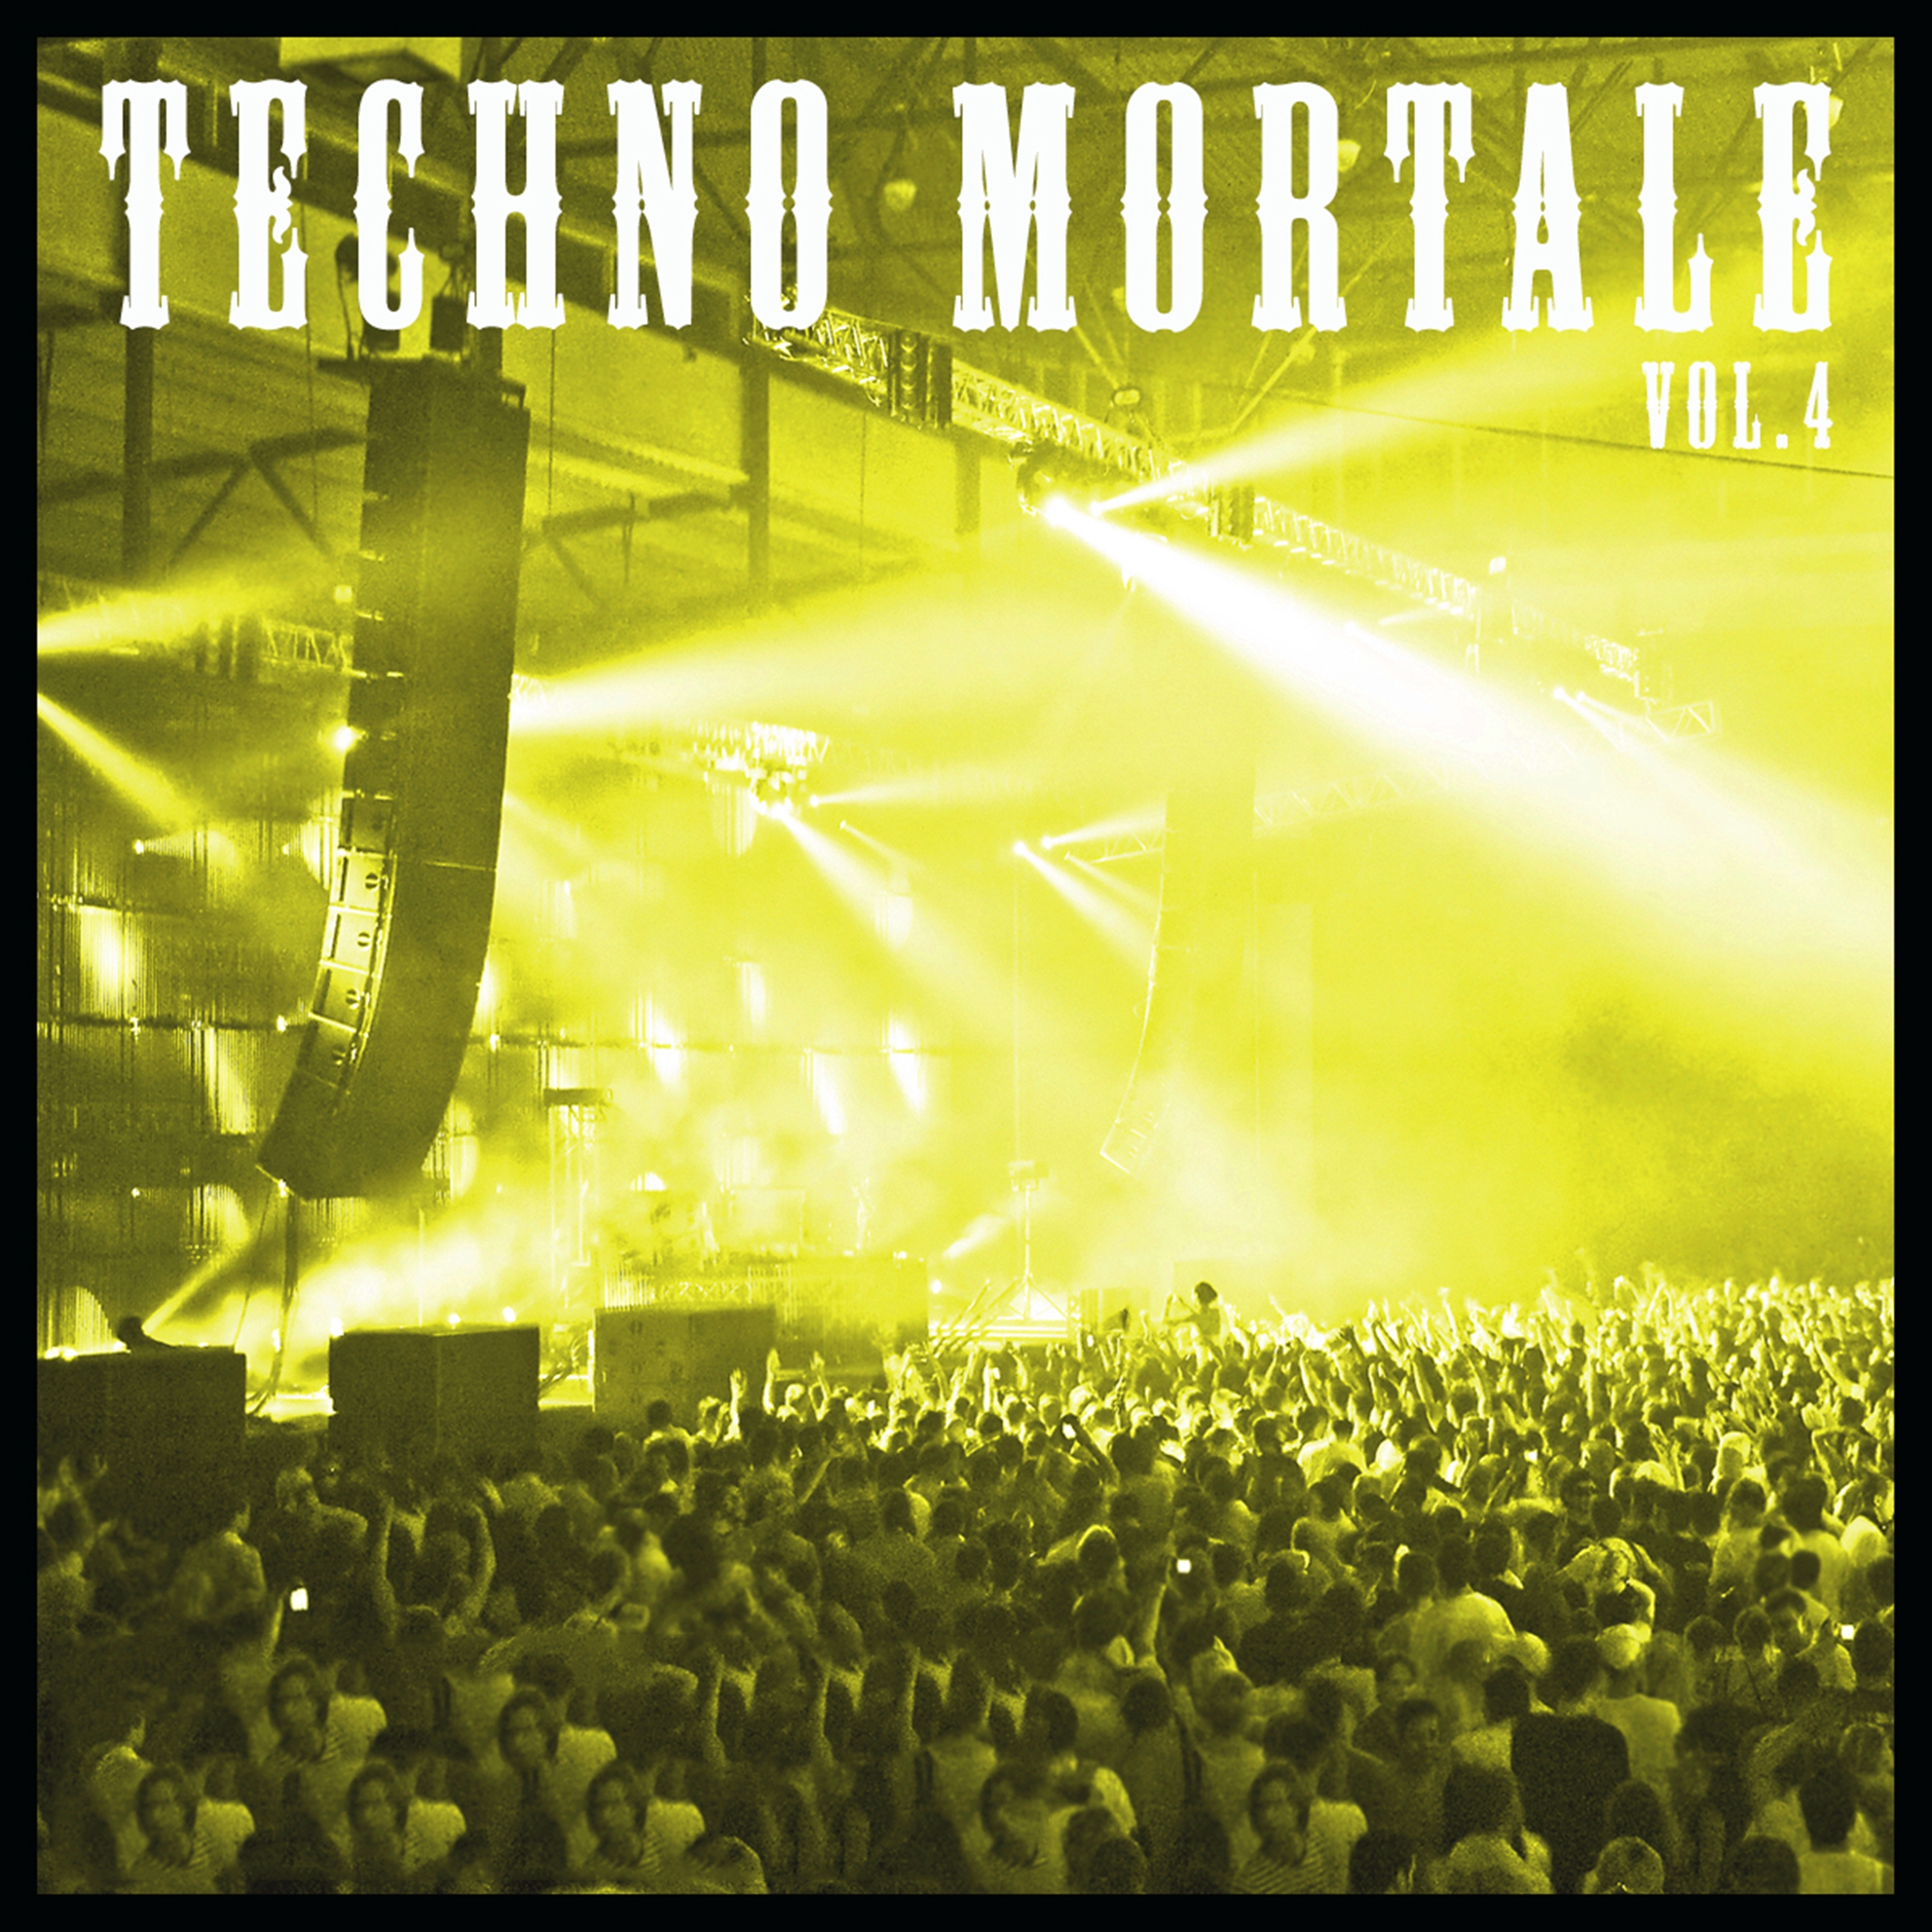 Techno Mortale, Vol. 4